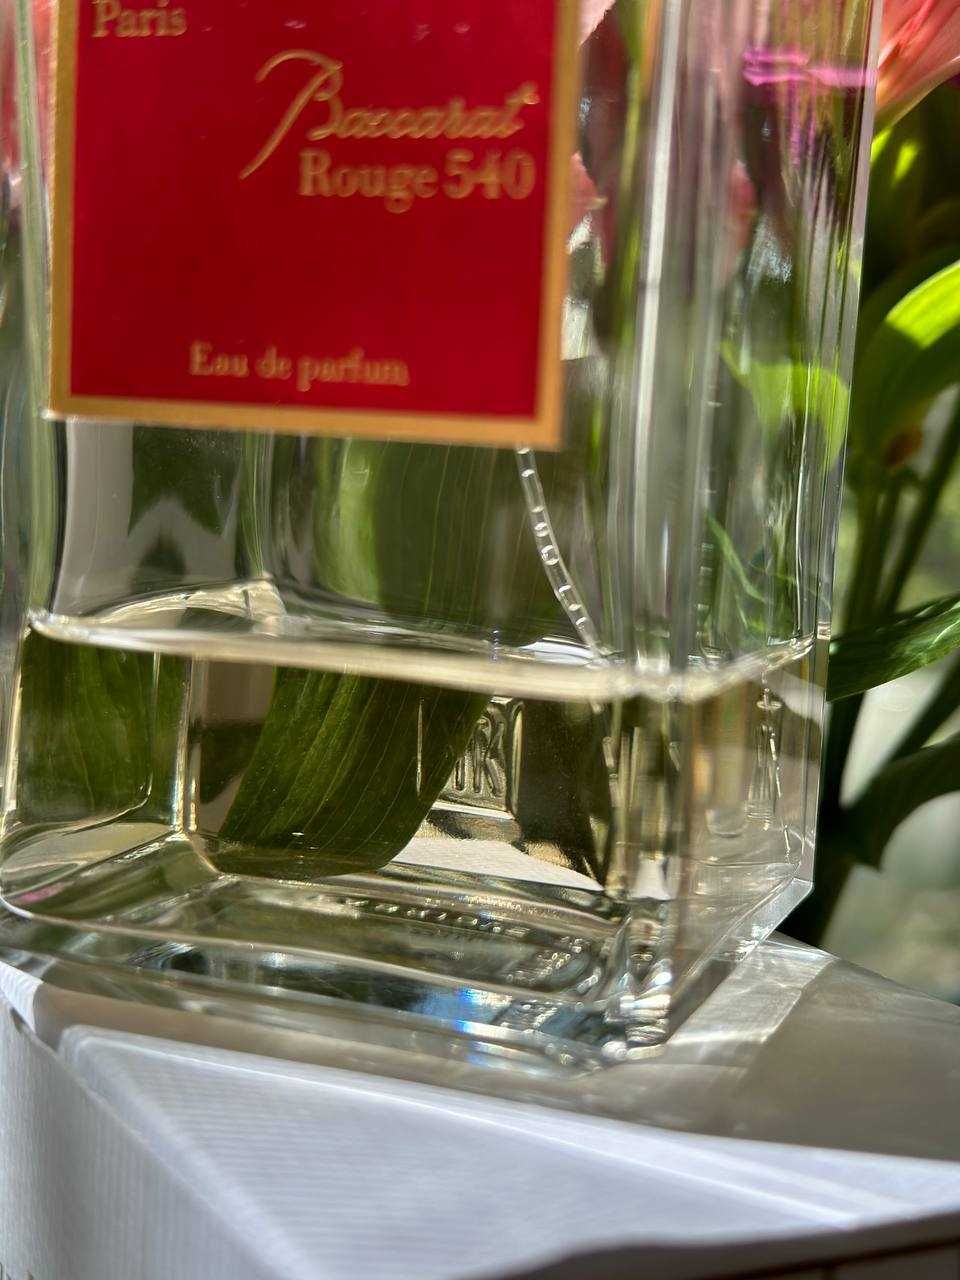 Продам Baccarat Rouge 540 Maison Francis Kurkdjian орігінал